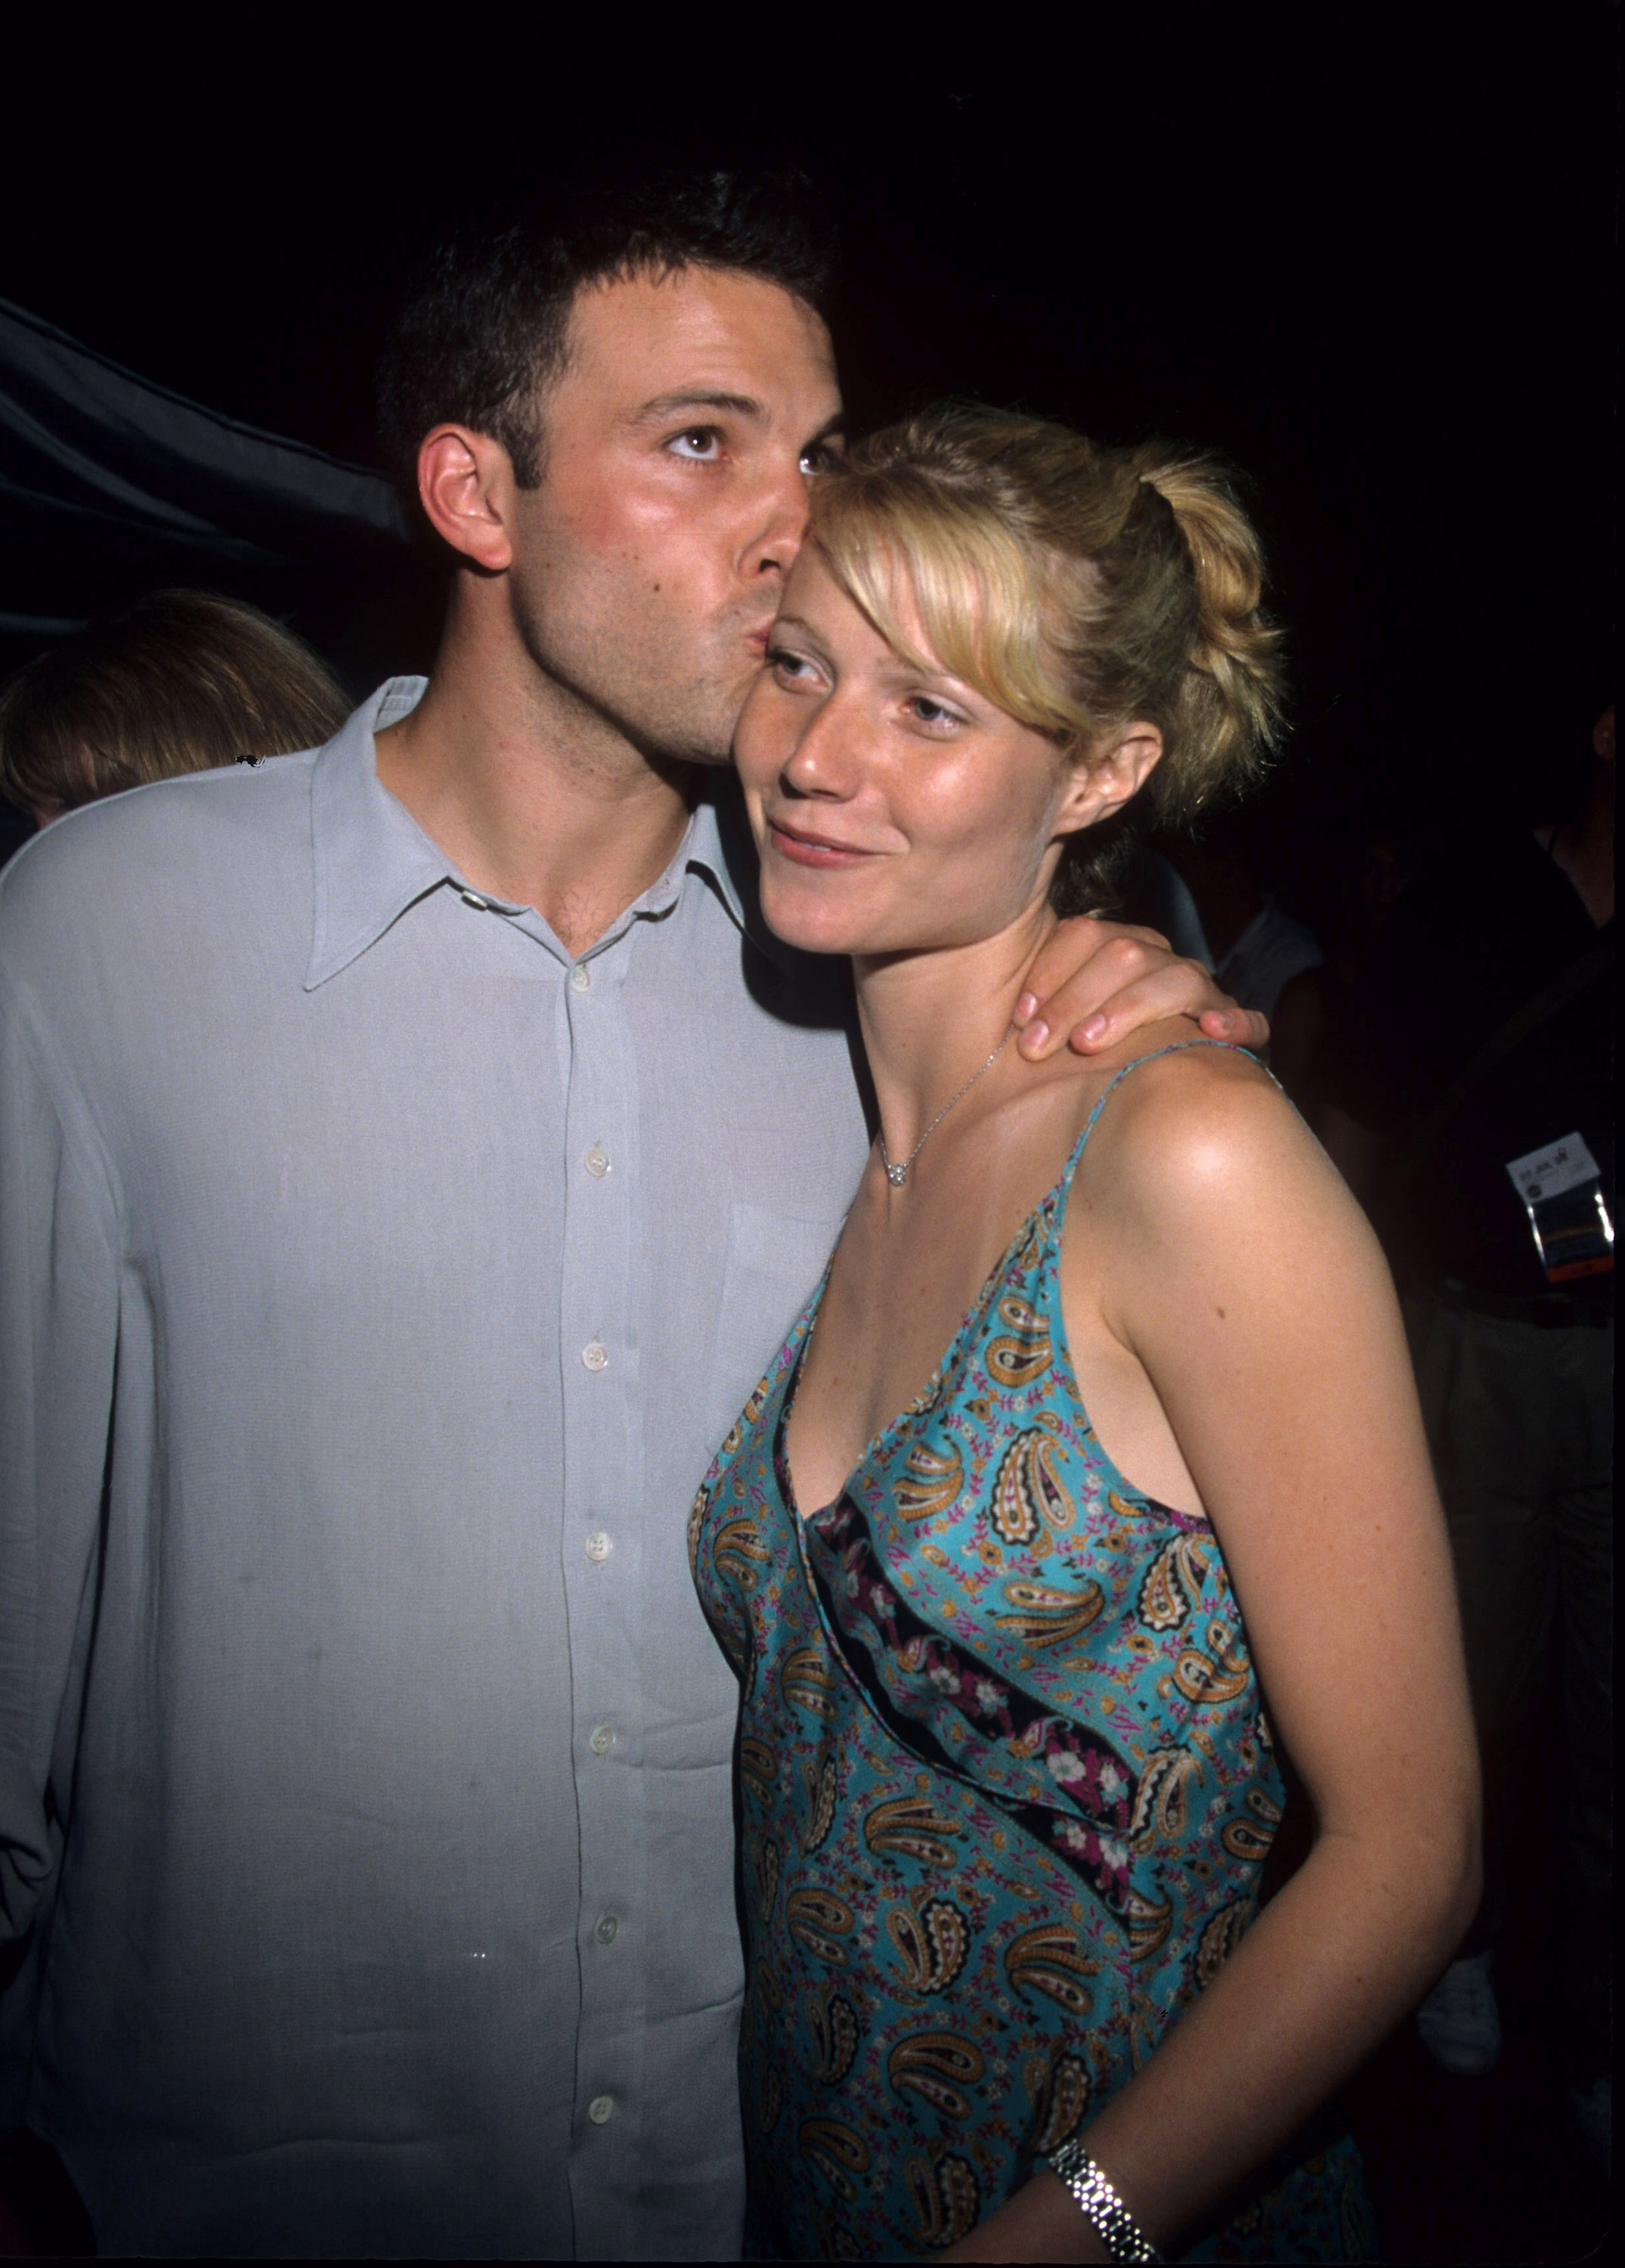 Ben Affleck und Gwyneth Paltrow bei der Premiere von "Armageddon", 1998 | Quelle: Getty Images